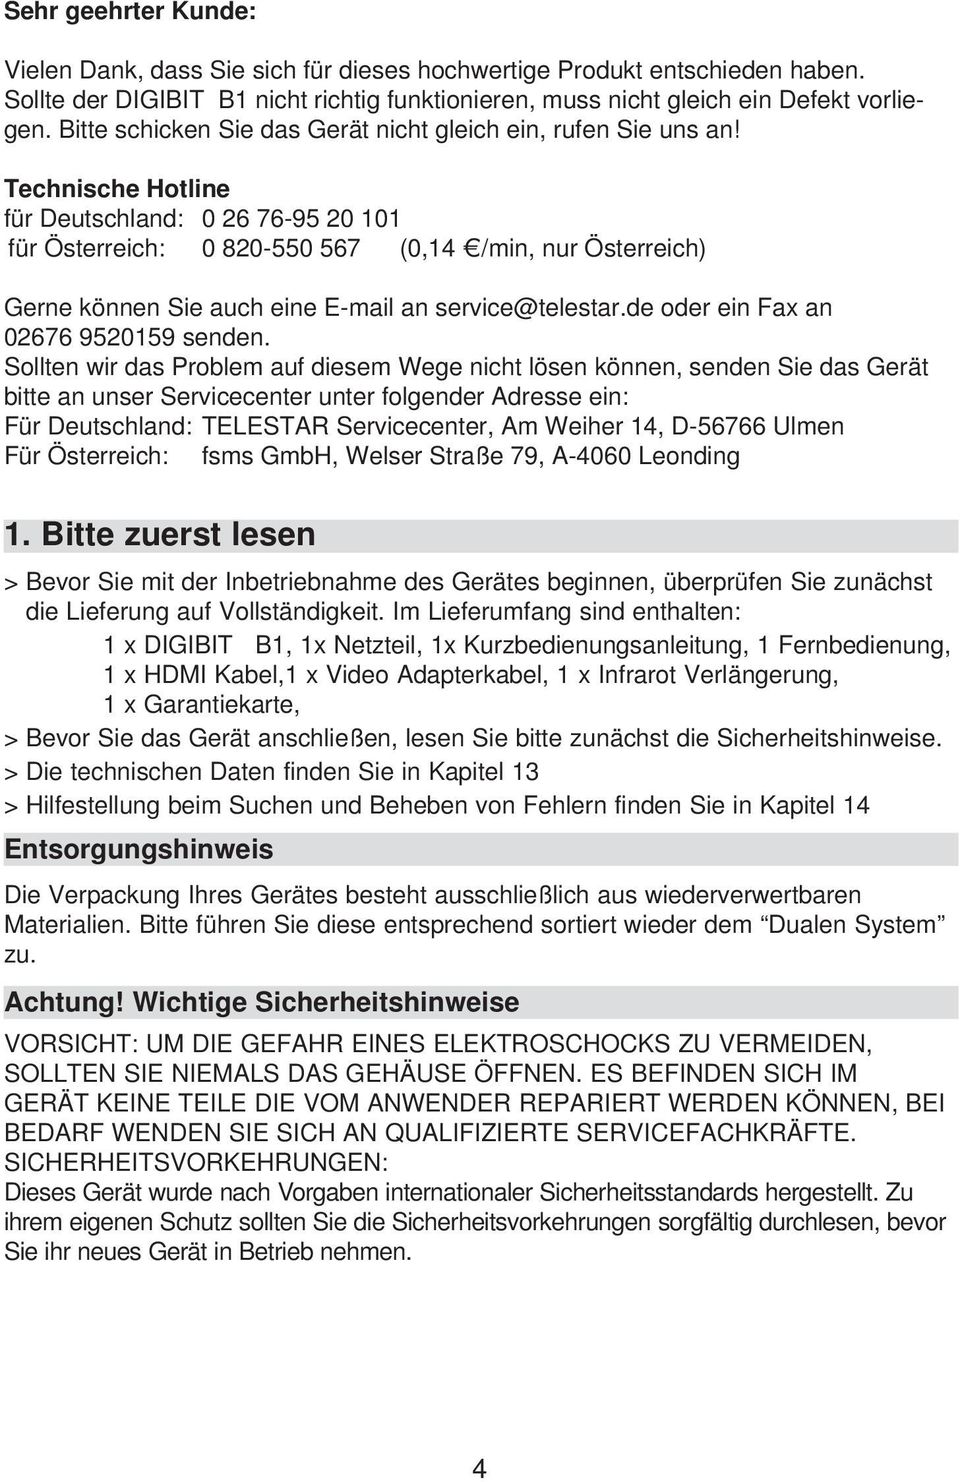 Technische Hotline für Deutschland: 0 26 76-95 20 101 für Österreich: 0 820-550 567 (0,14 /min, nur Österreich) Gerne können Sie auch eine E-mail an service@telestar.